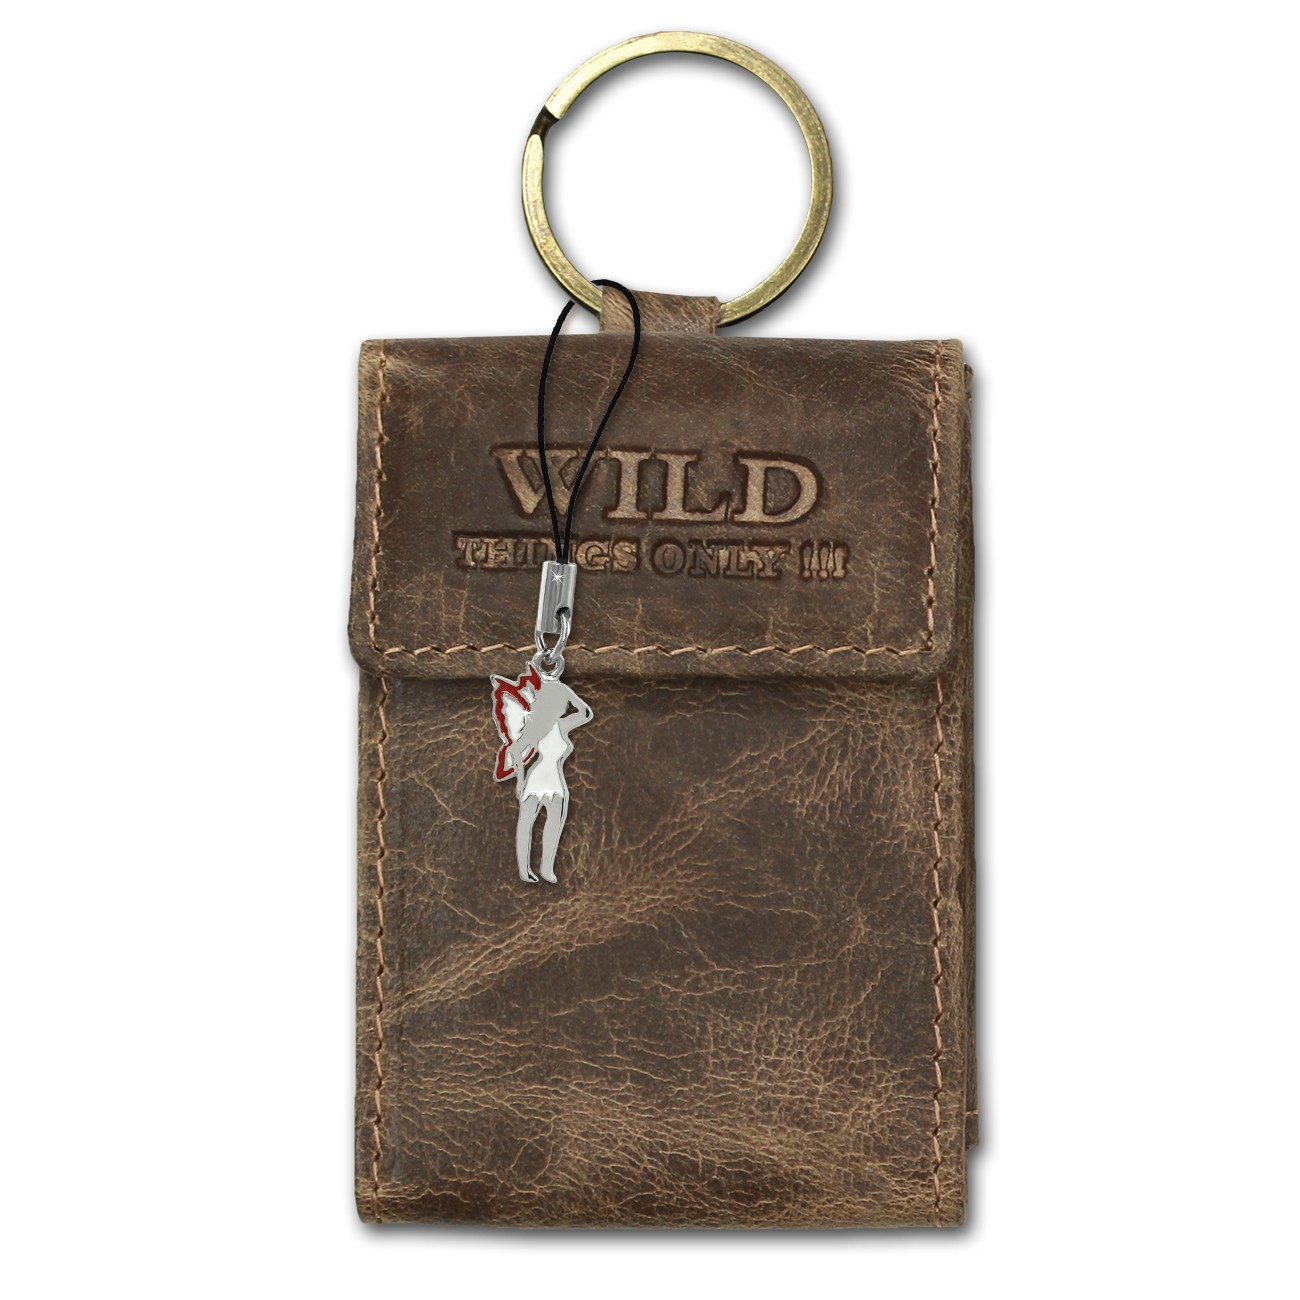 Wild Things Only Etui, Geldbörse Leder braun Minibörse Schlüsseltasche OPJ904N